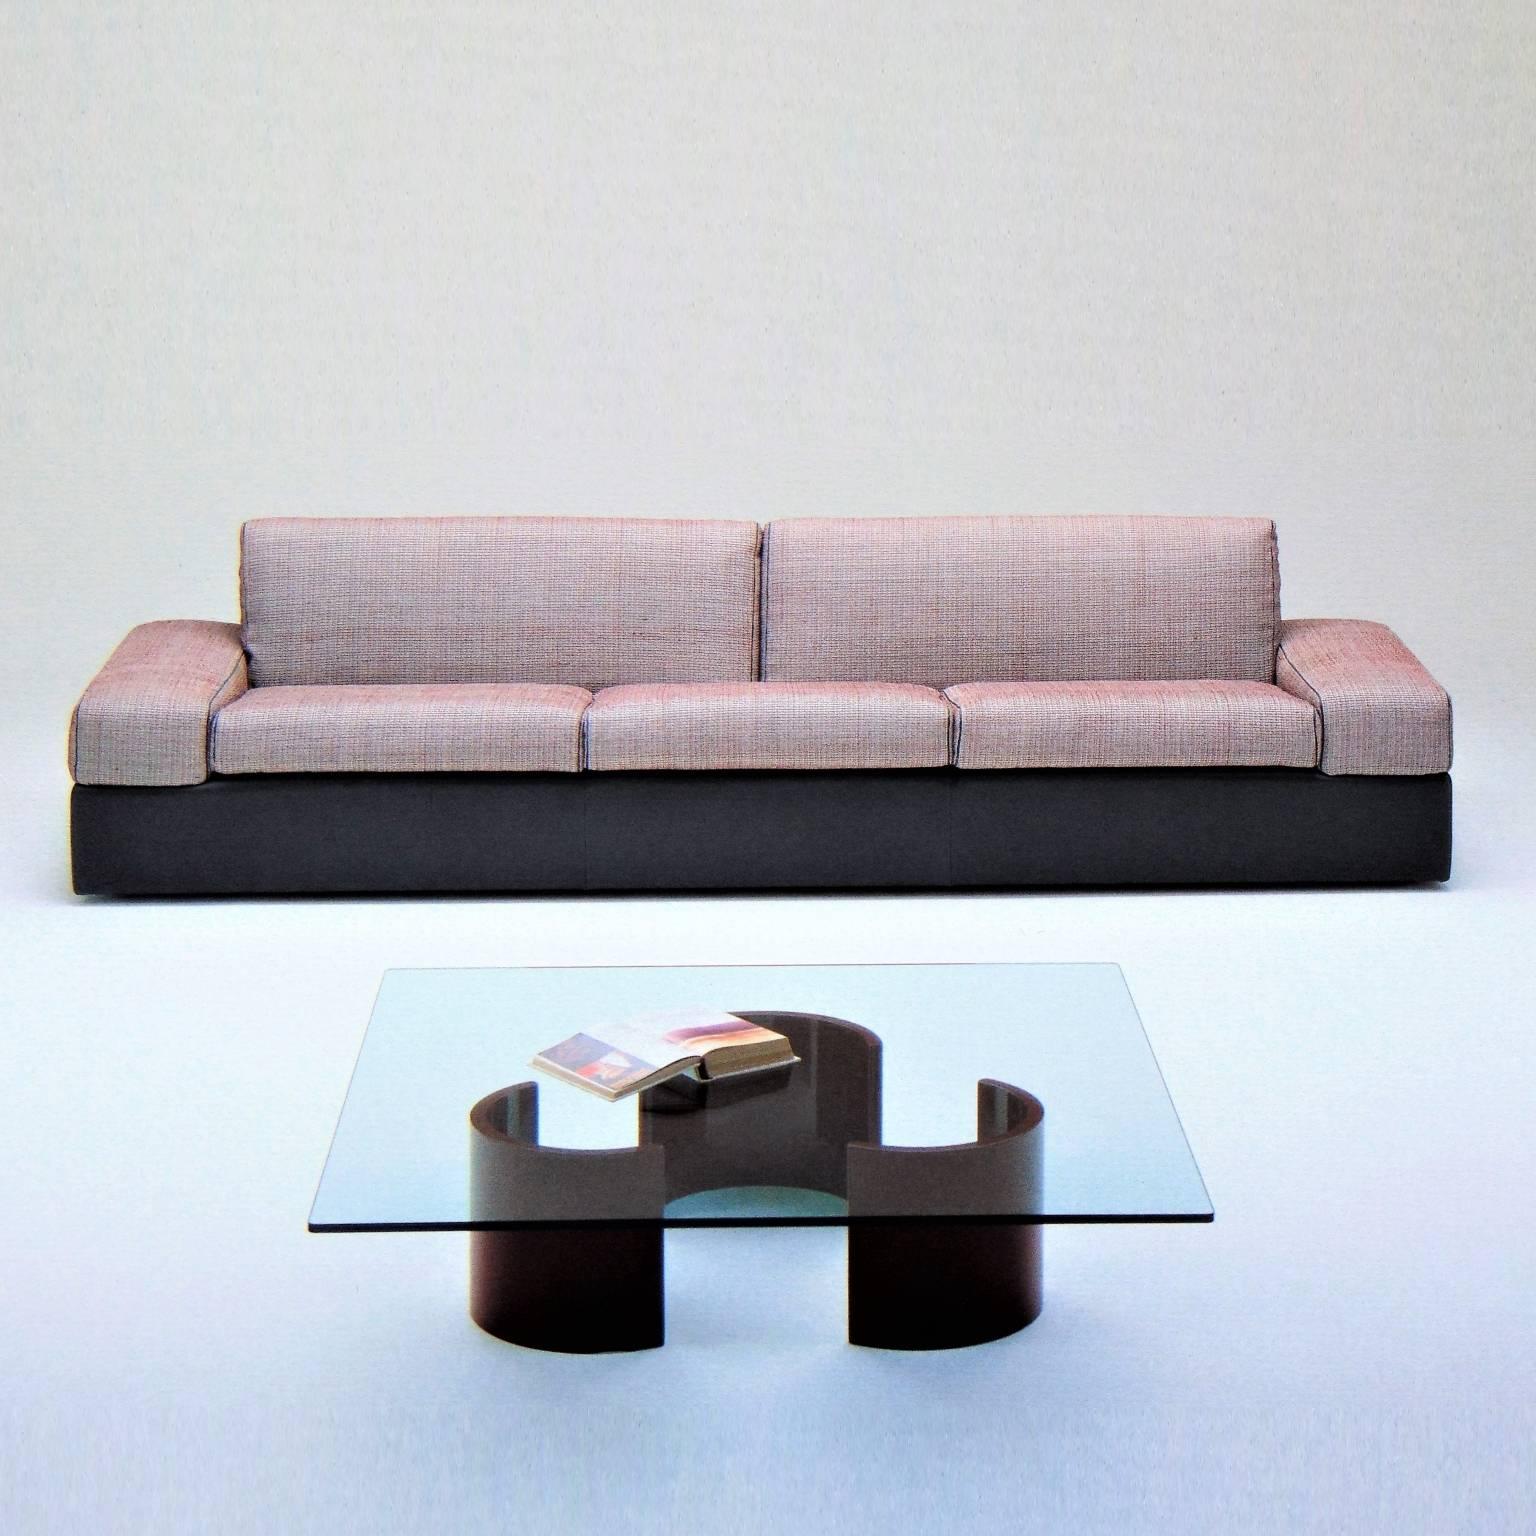 Ce quatre places, conçu au début des années 1980 par Luigi Sormani et Casabella Miami pour une ligne de maxi-mobilier destinée aux États-Unis, est un confortable canapé d'un seul tenant pour une villa de luxe. La structure est en cuir gris chaud et